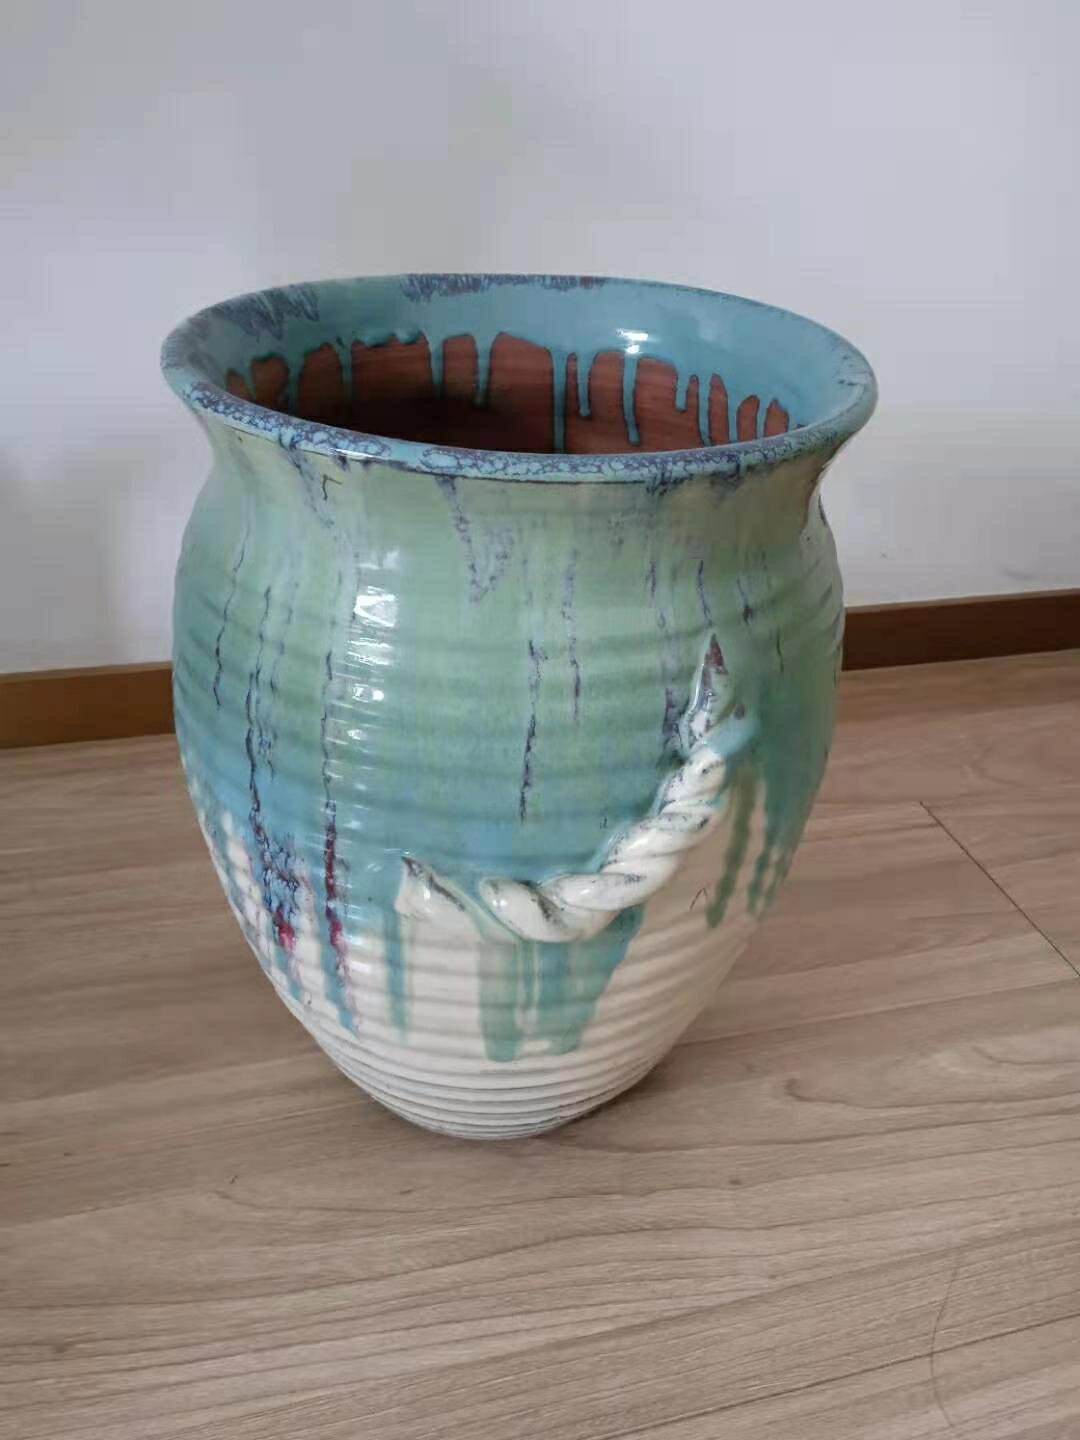 觀賞性藝術花瓶 希臘地中海風格 國外帶回 口徑24cm